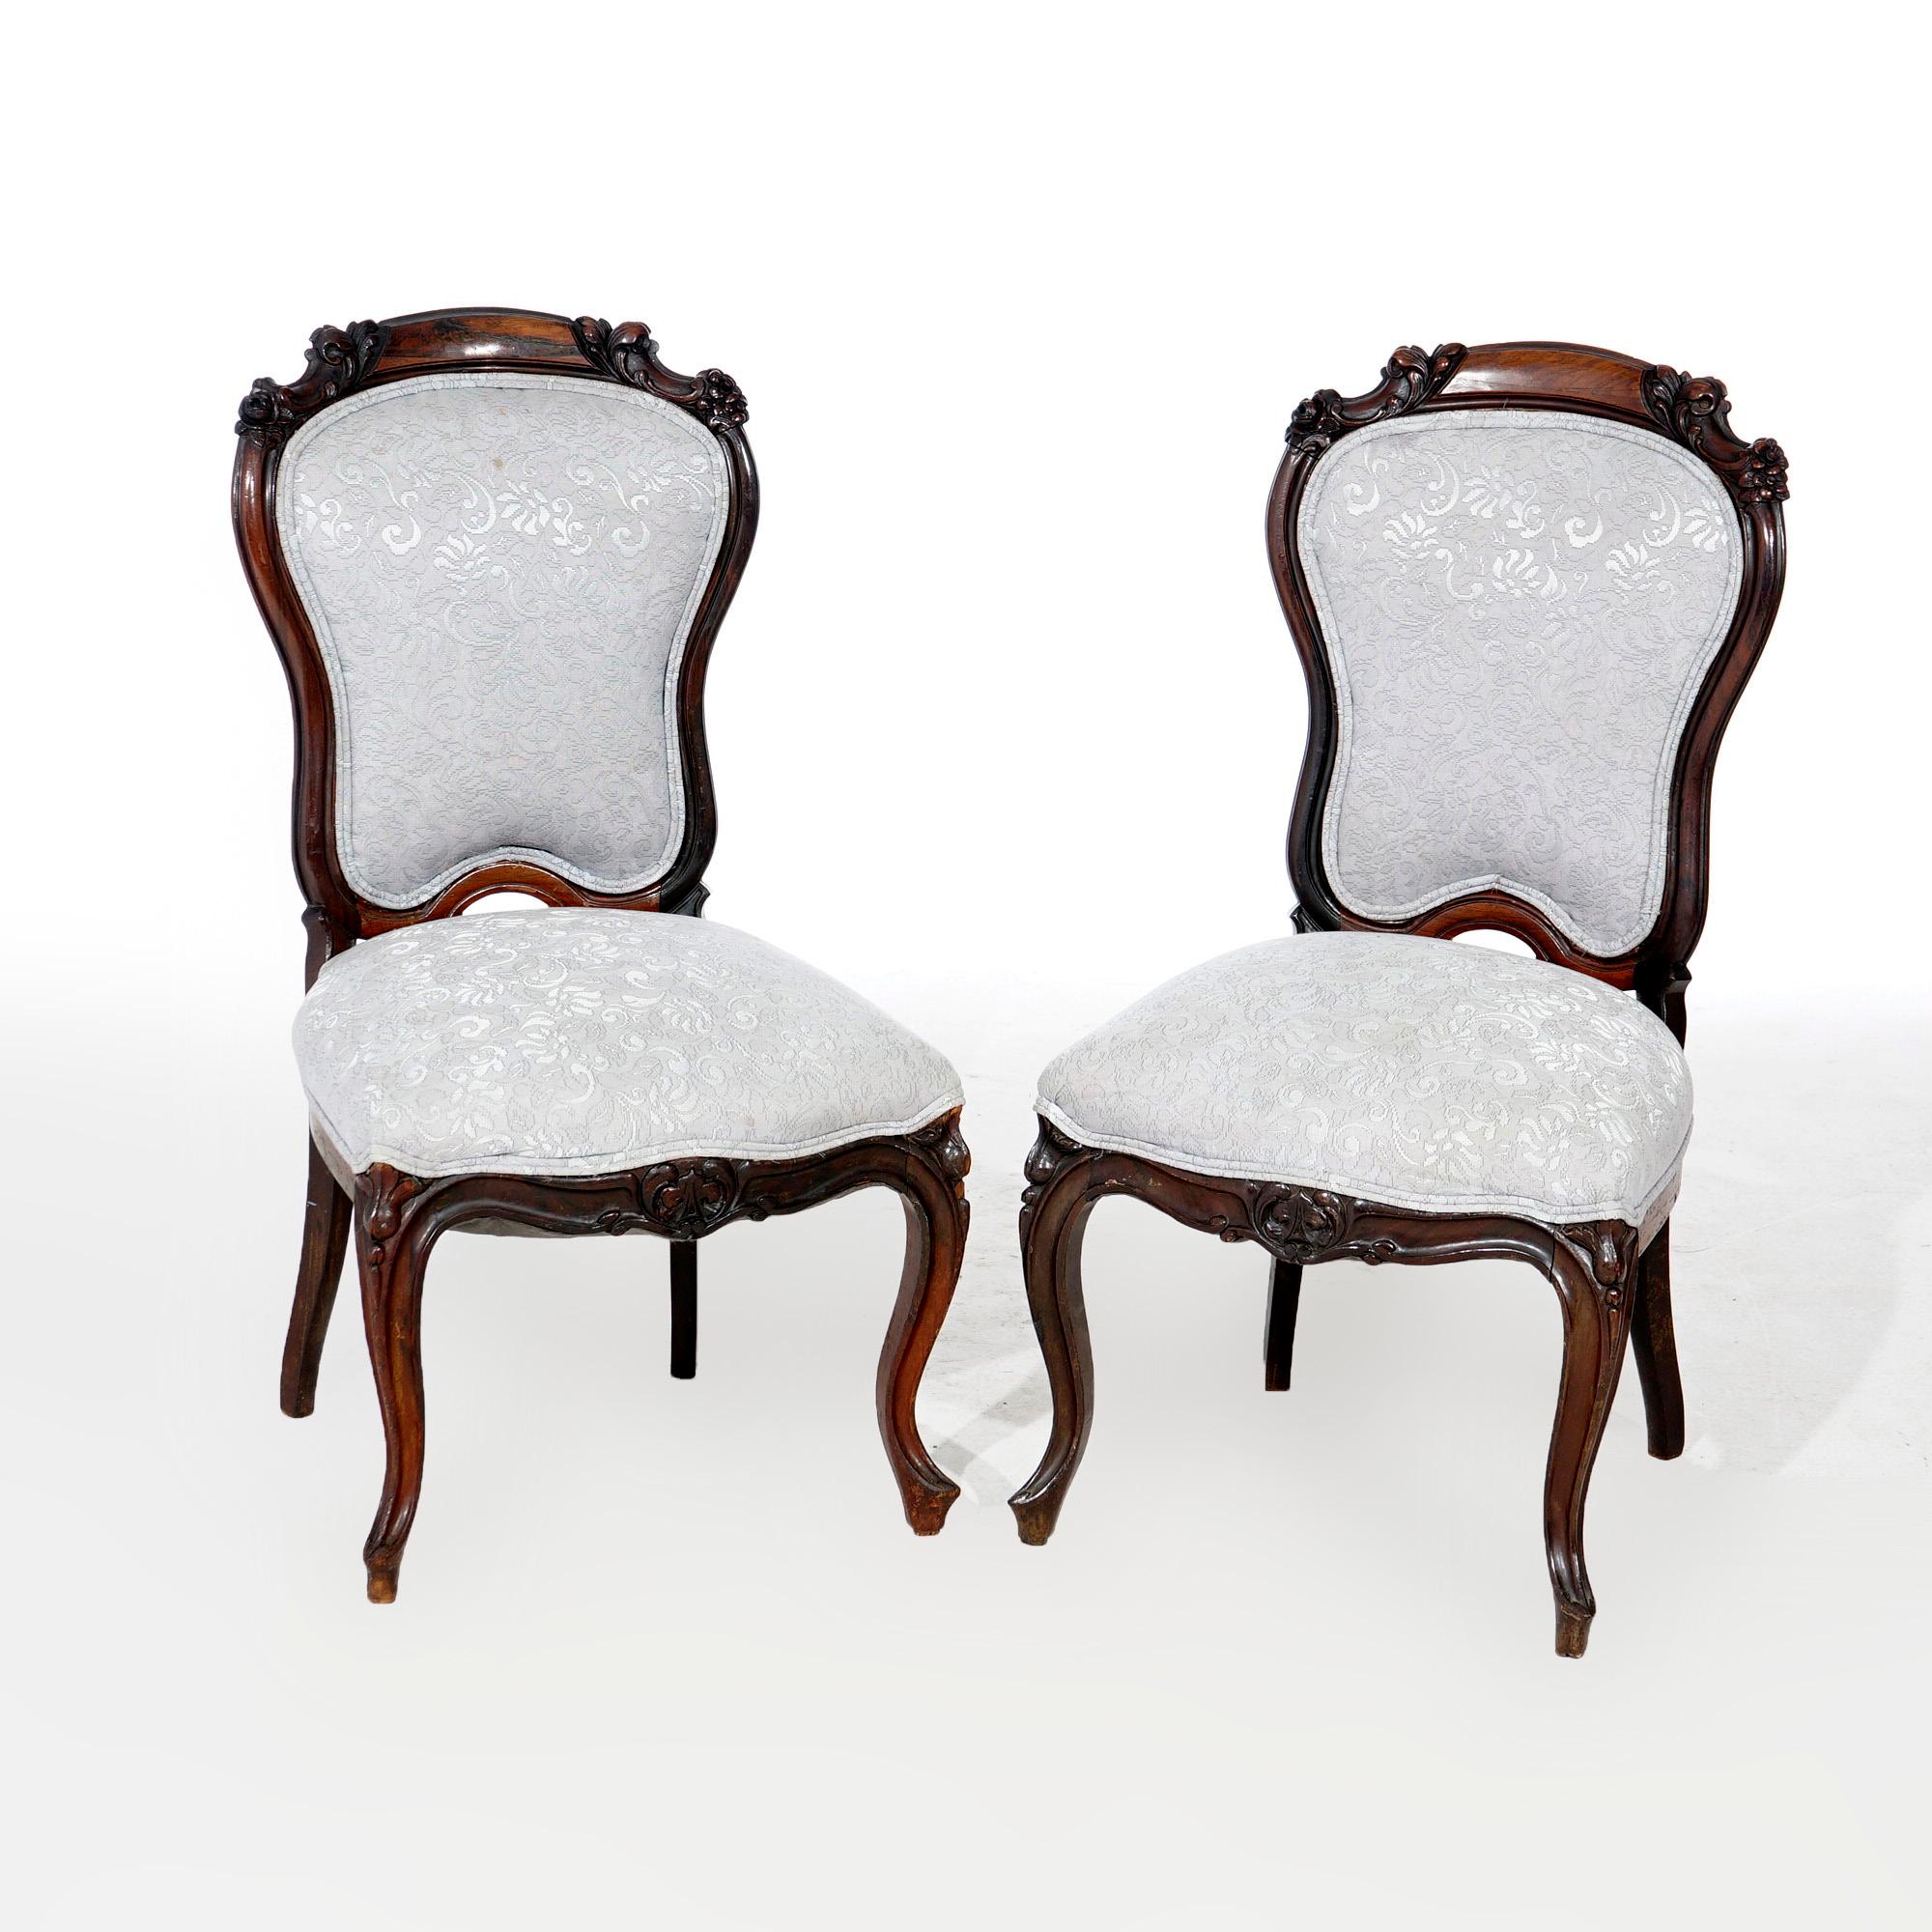 Ein antikes Paar viktorianischer Wohnzimmerstühle aus Mahagoni mit geschnitzten Blattelementen, gepolsterten Rückenlehnen und Sitzen, auf Cabriole-Beinen, 19. Jahrhundert.

Maße: 36,25''H x 19,25''B x 21''T; 19''Sitzhöhe.